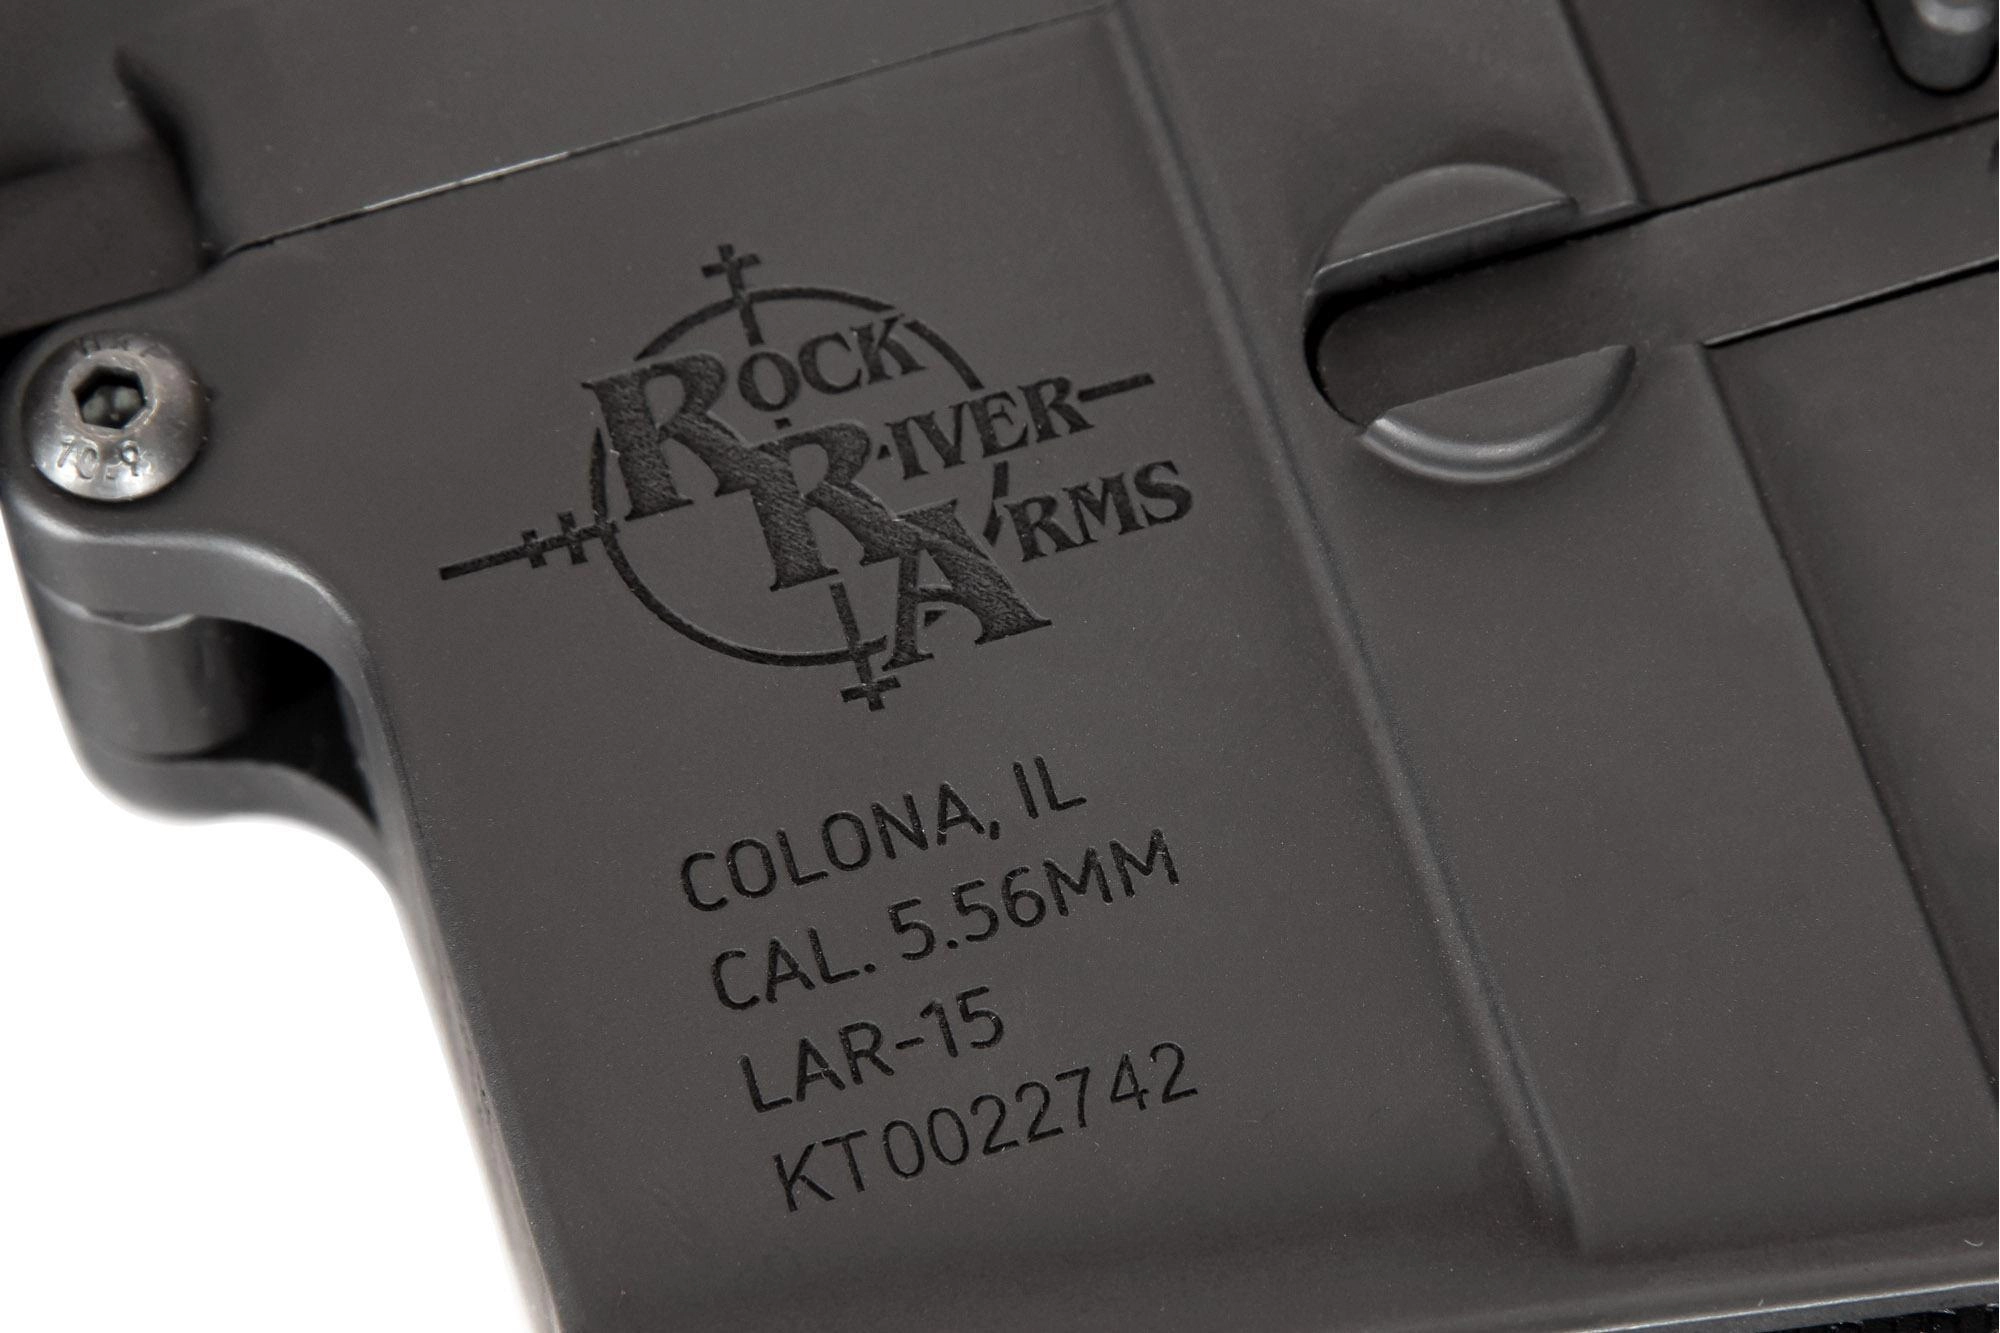 Specna Arms SA-E01 EDGE 2.0 sähköase - musta